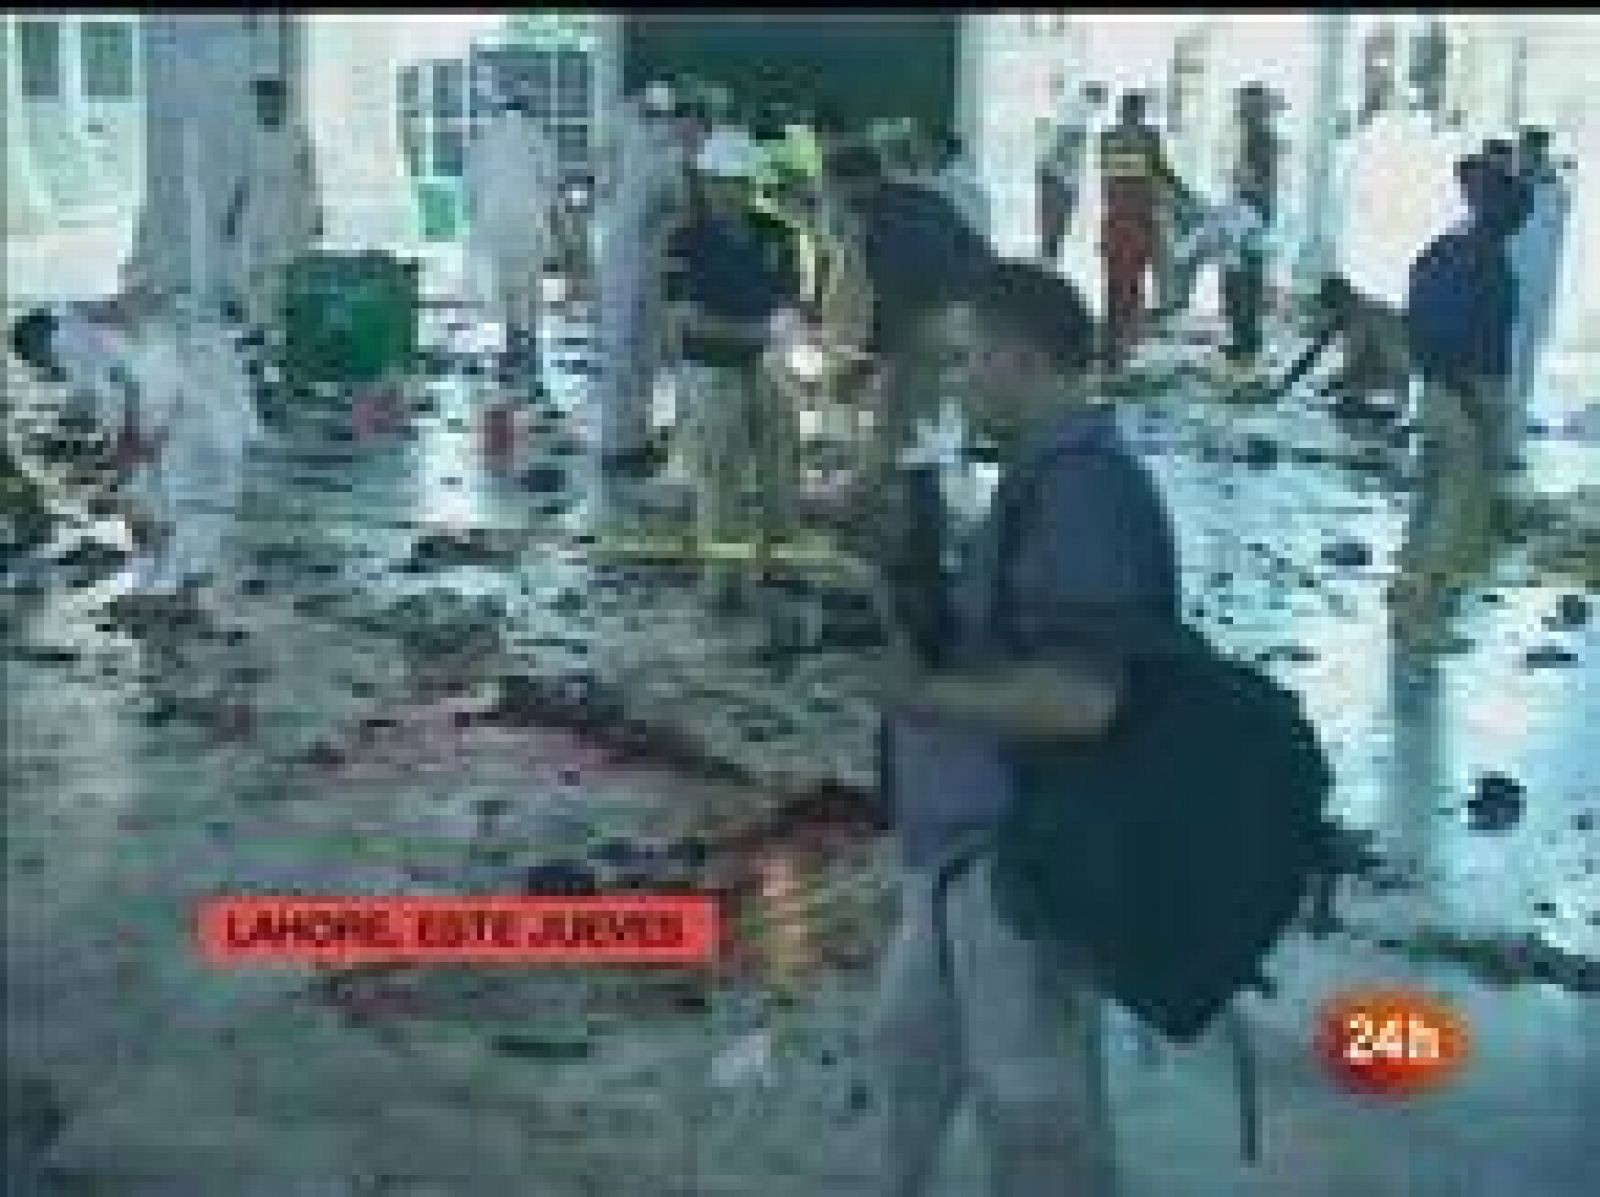  Al menos 41 muertos tras tres ataques con bomba en Pakistán